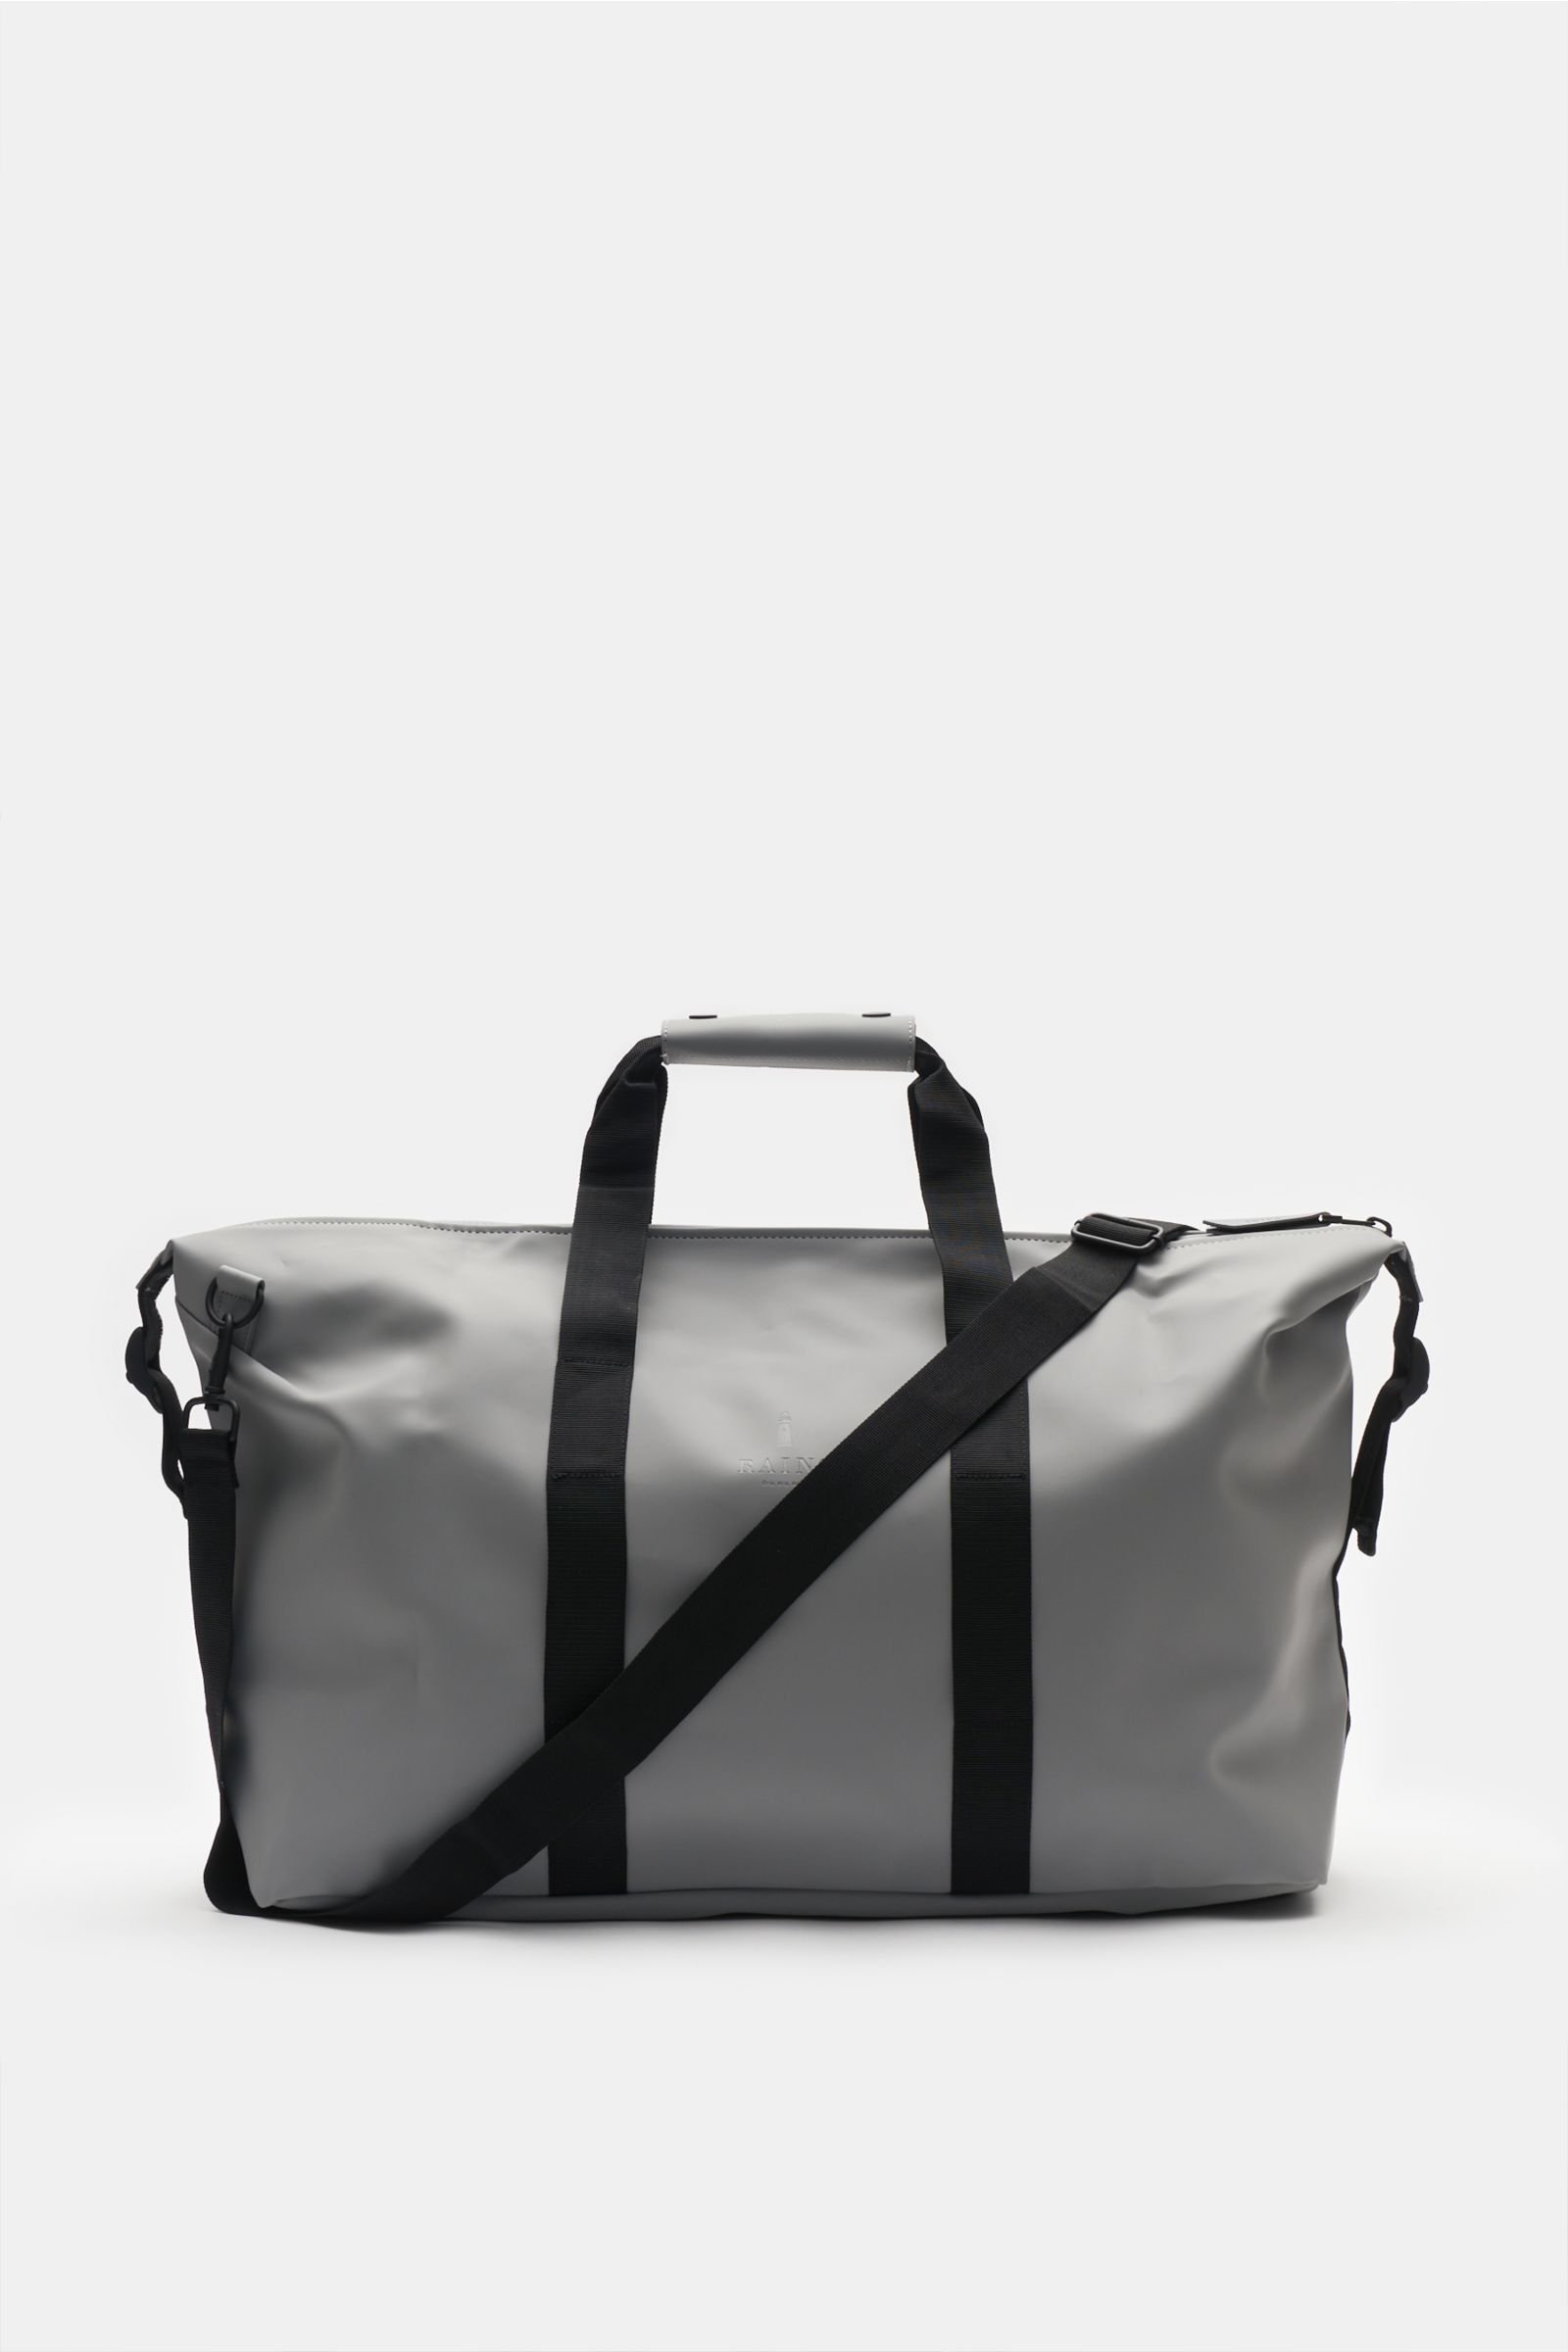 Travel bag 'Weekend Bag' grey